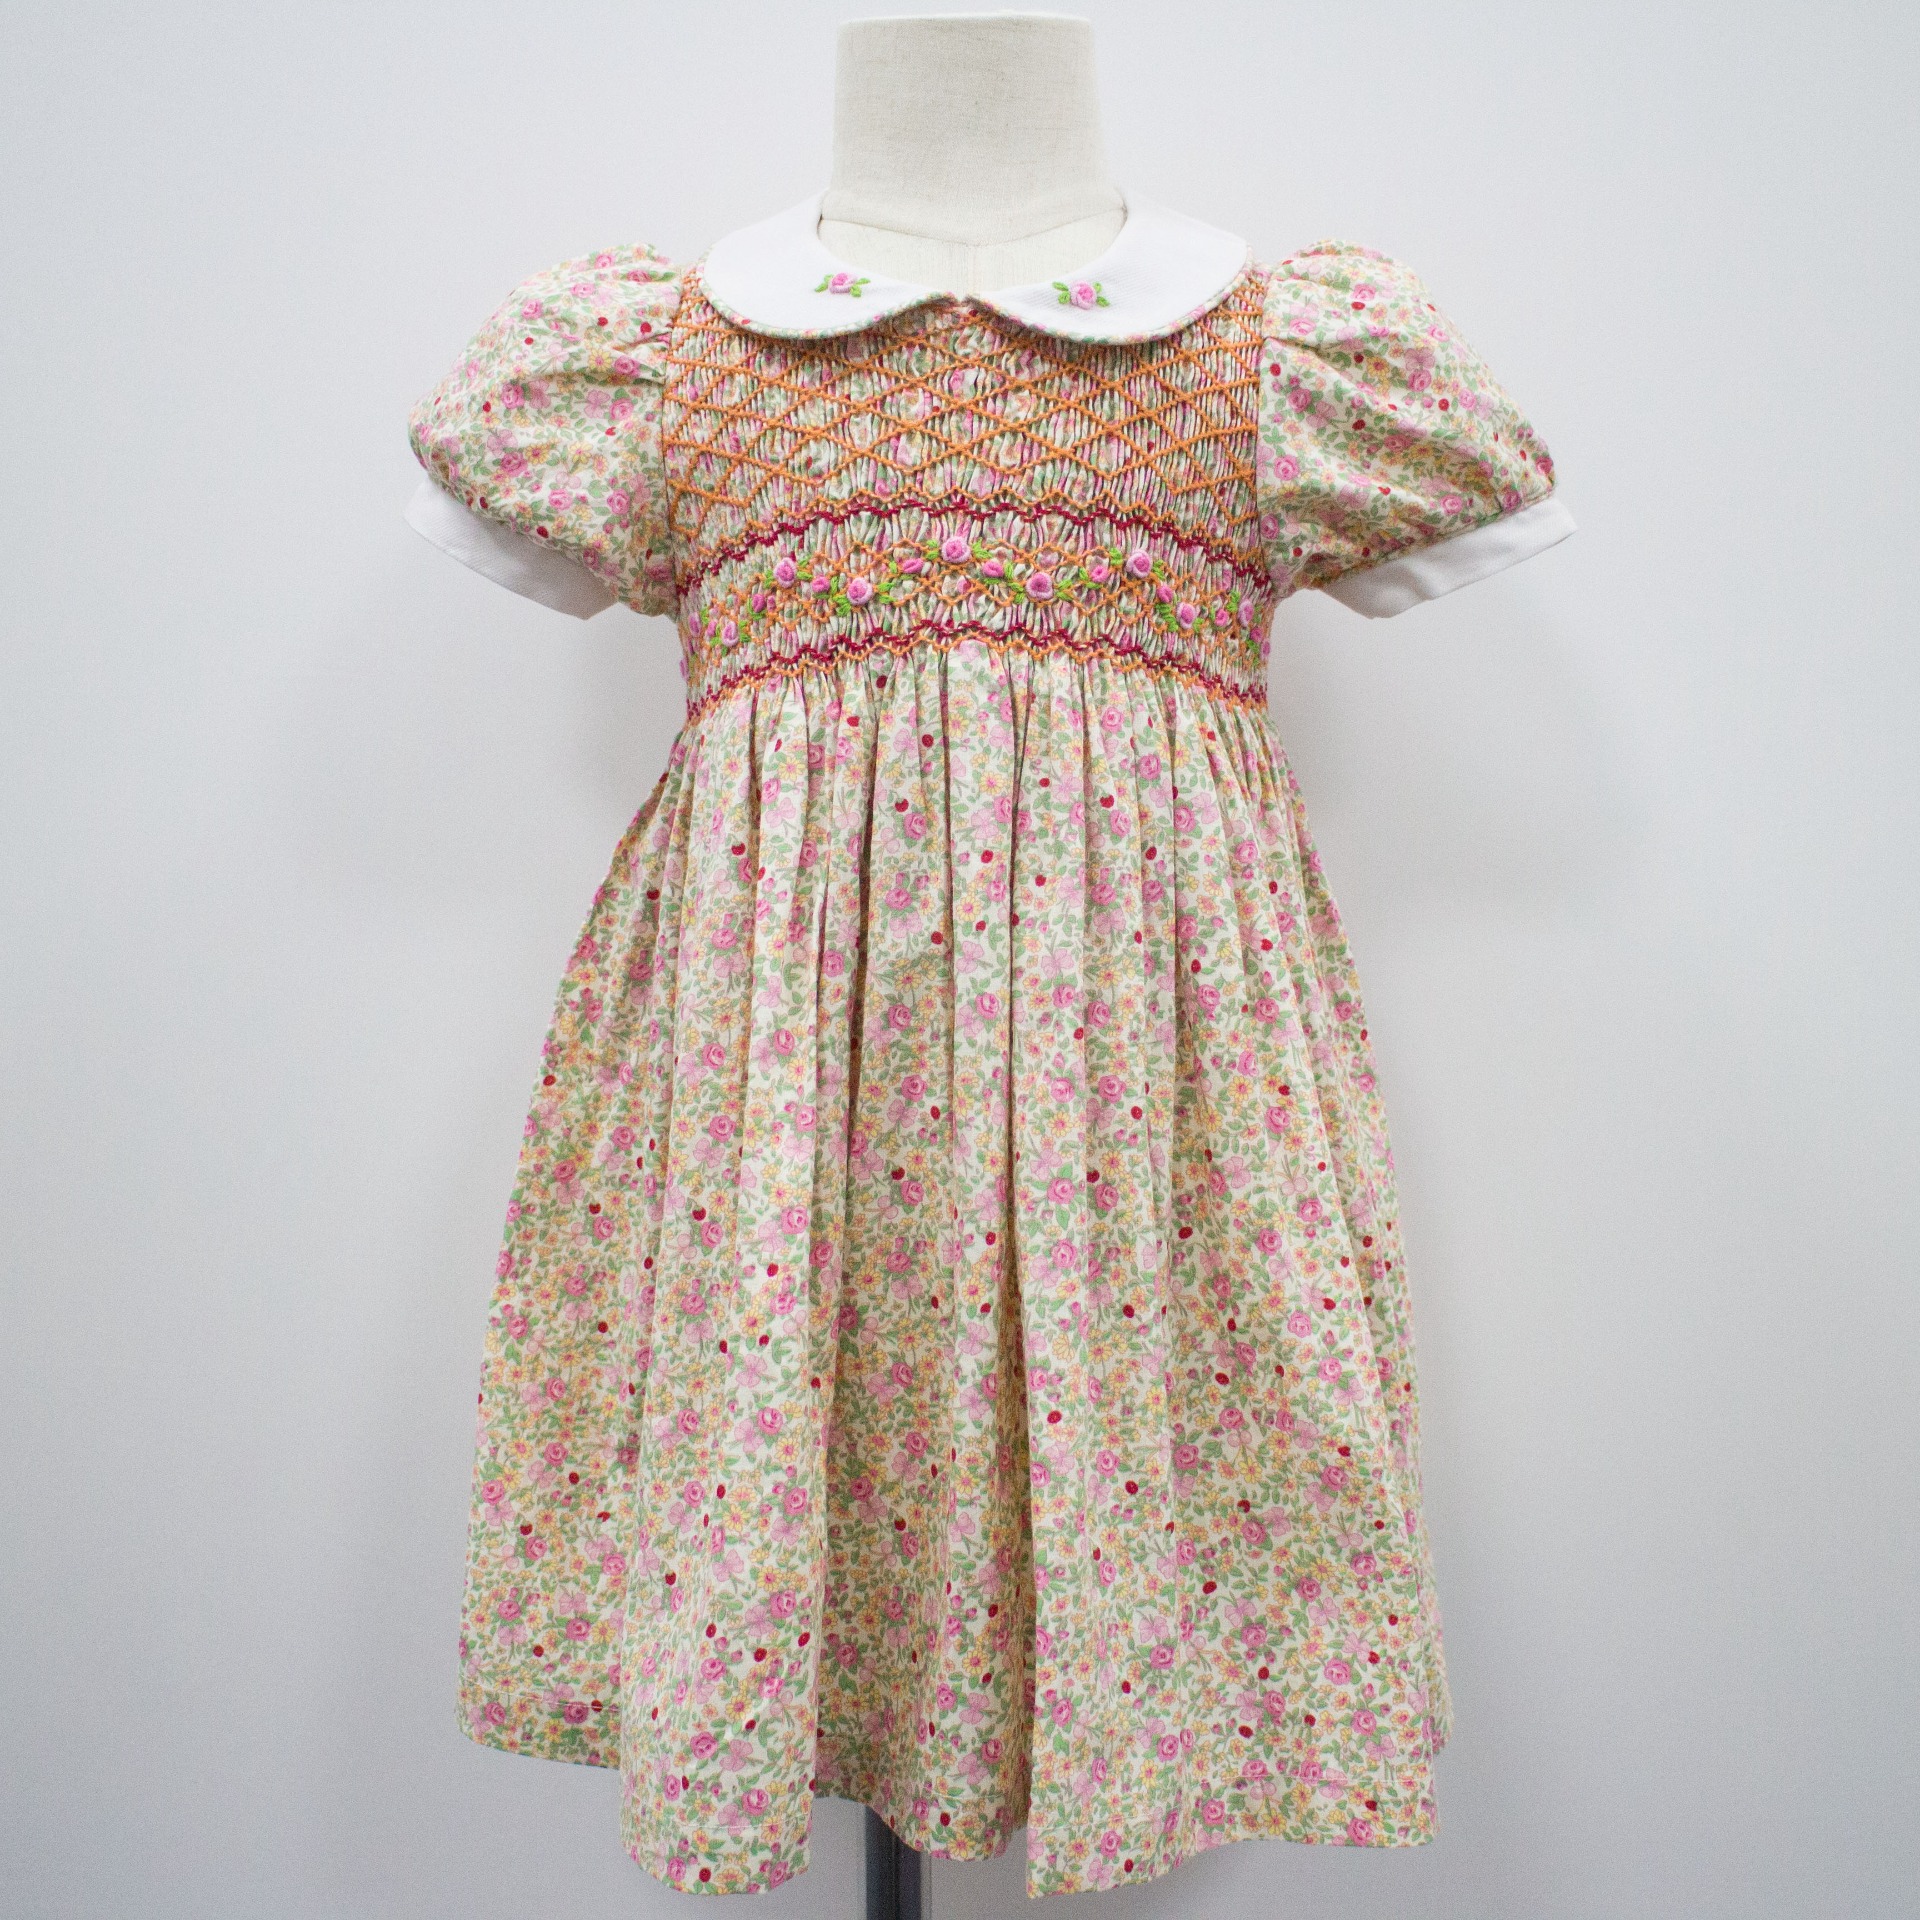 kids wholesale smocked clothing smock top smocking dress for girls Lapels short sleeves digital print princess dresses